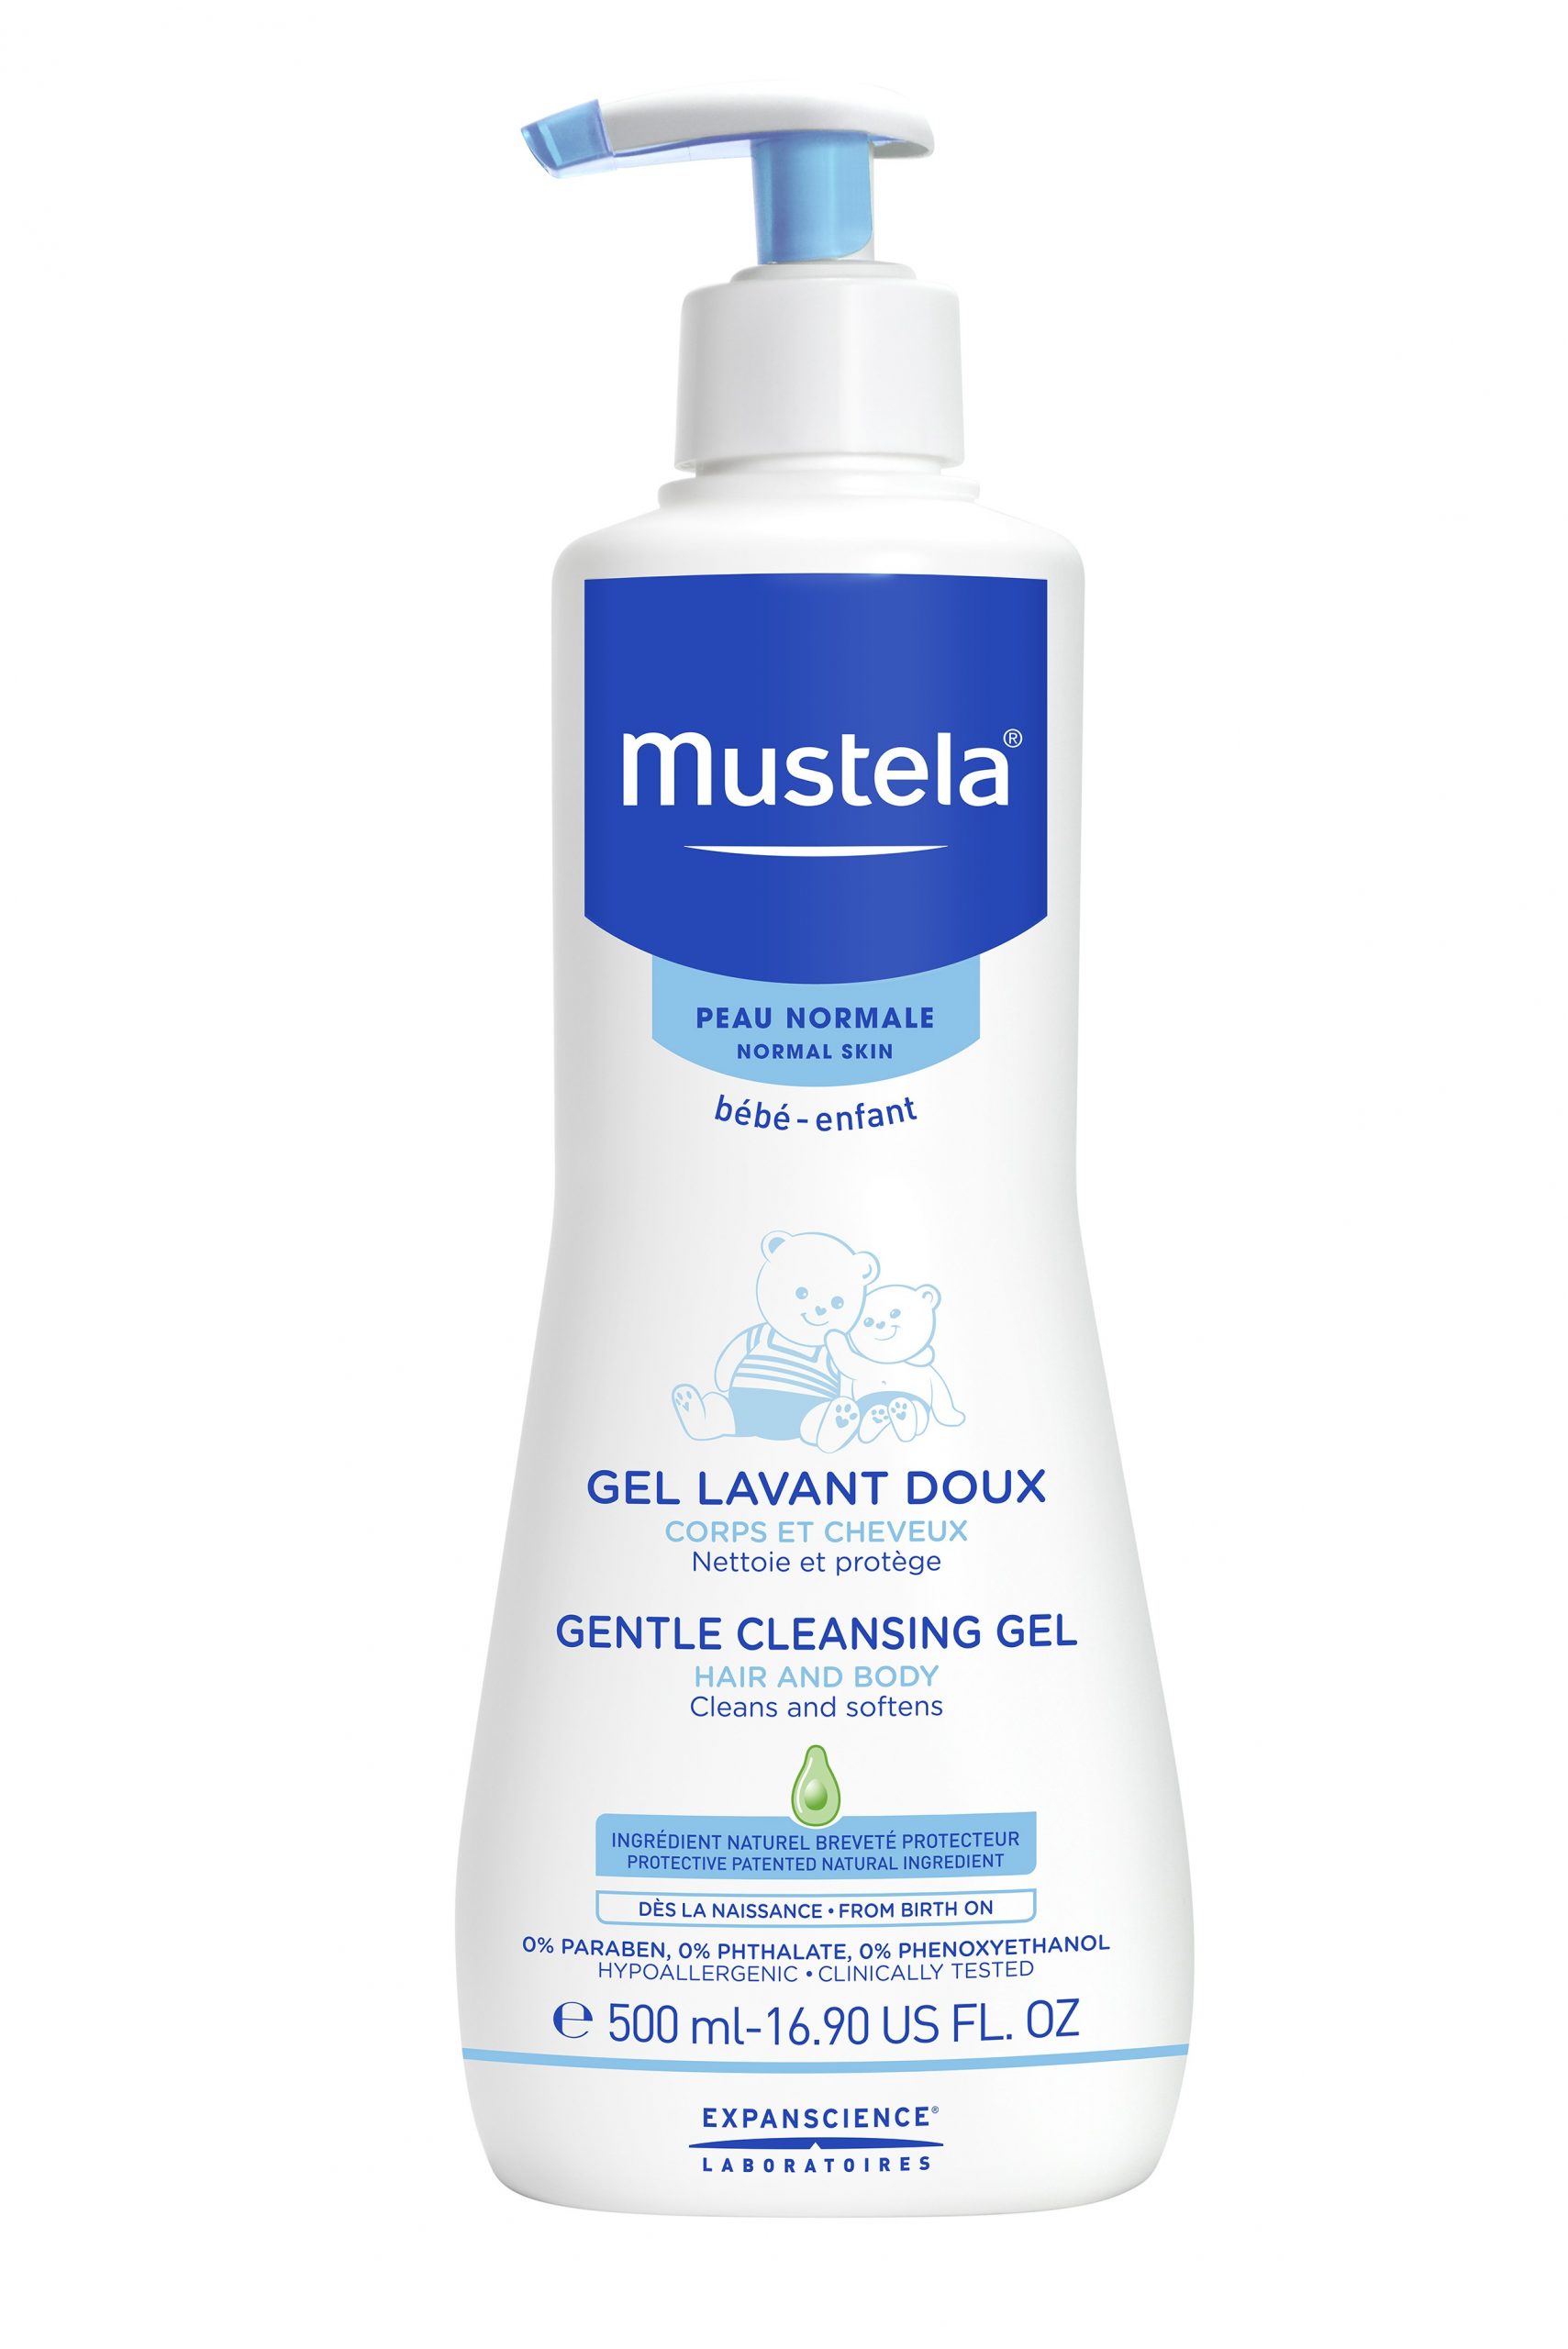 Mustela gentle cleansing gel